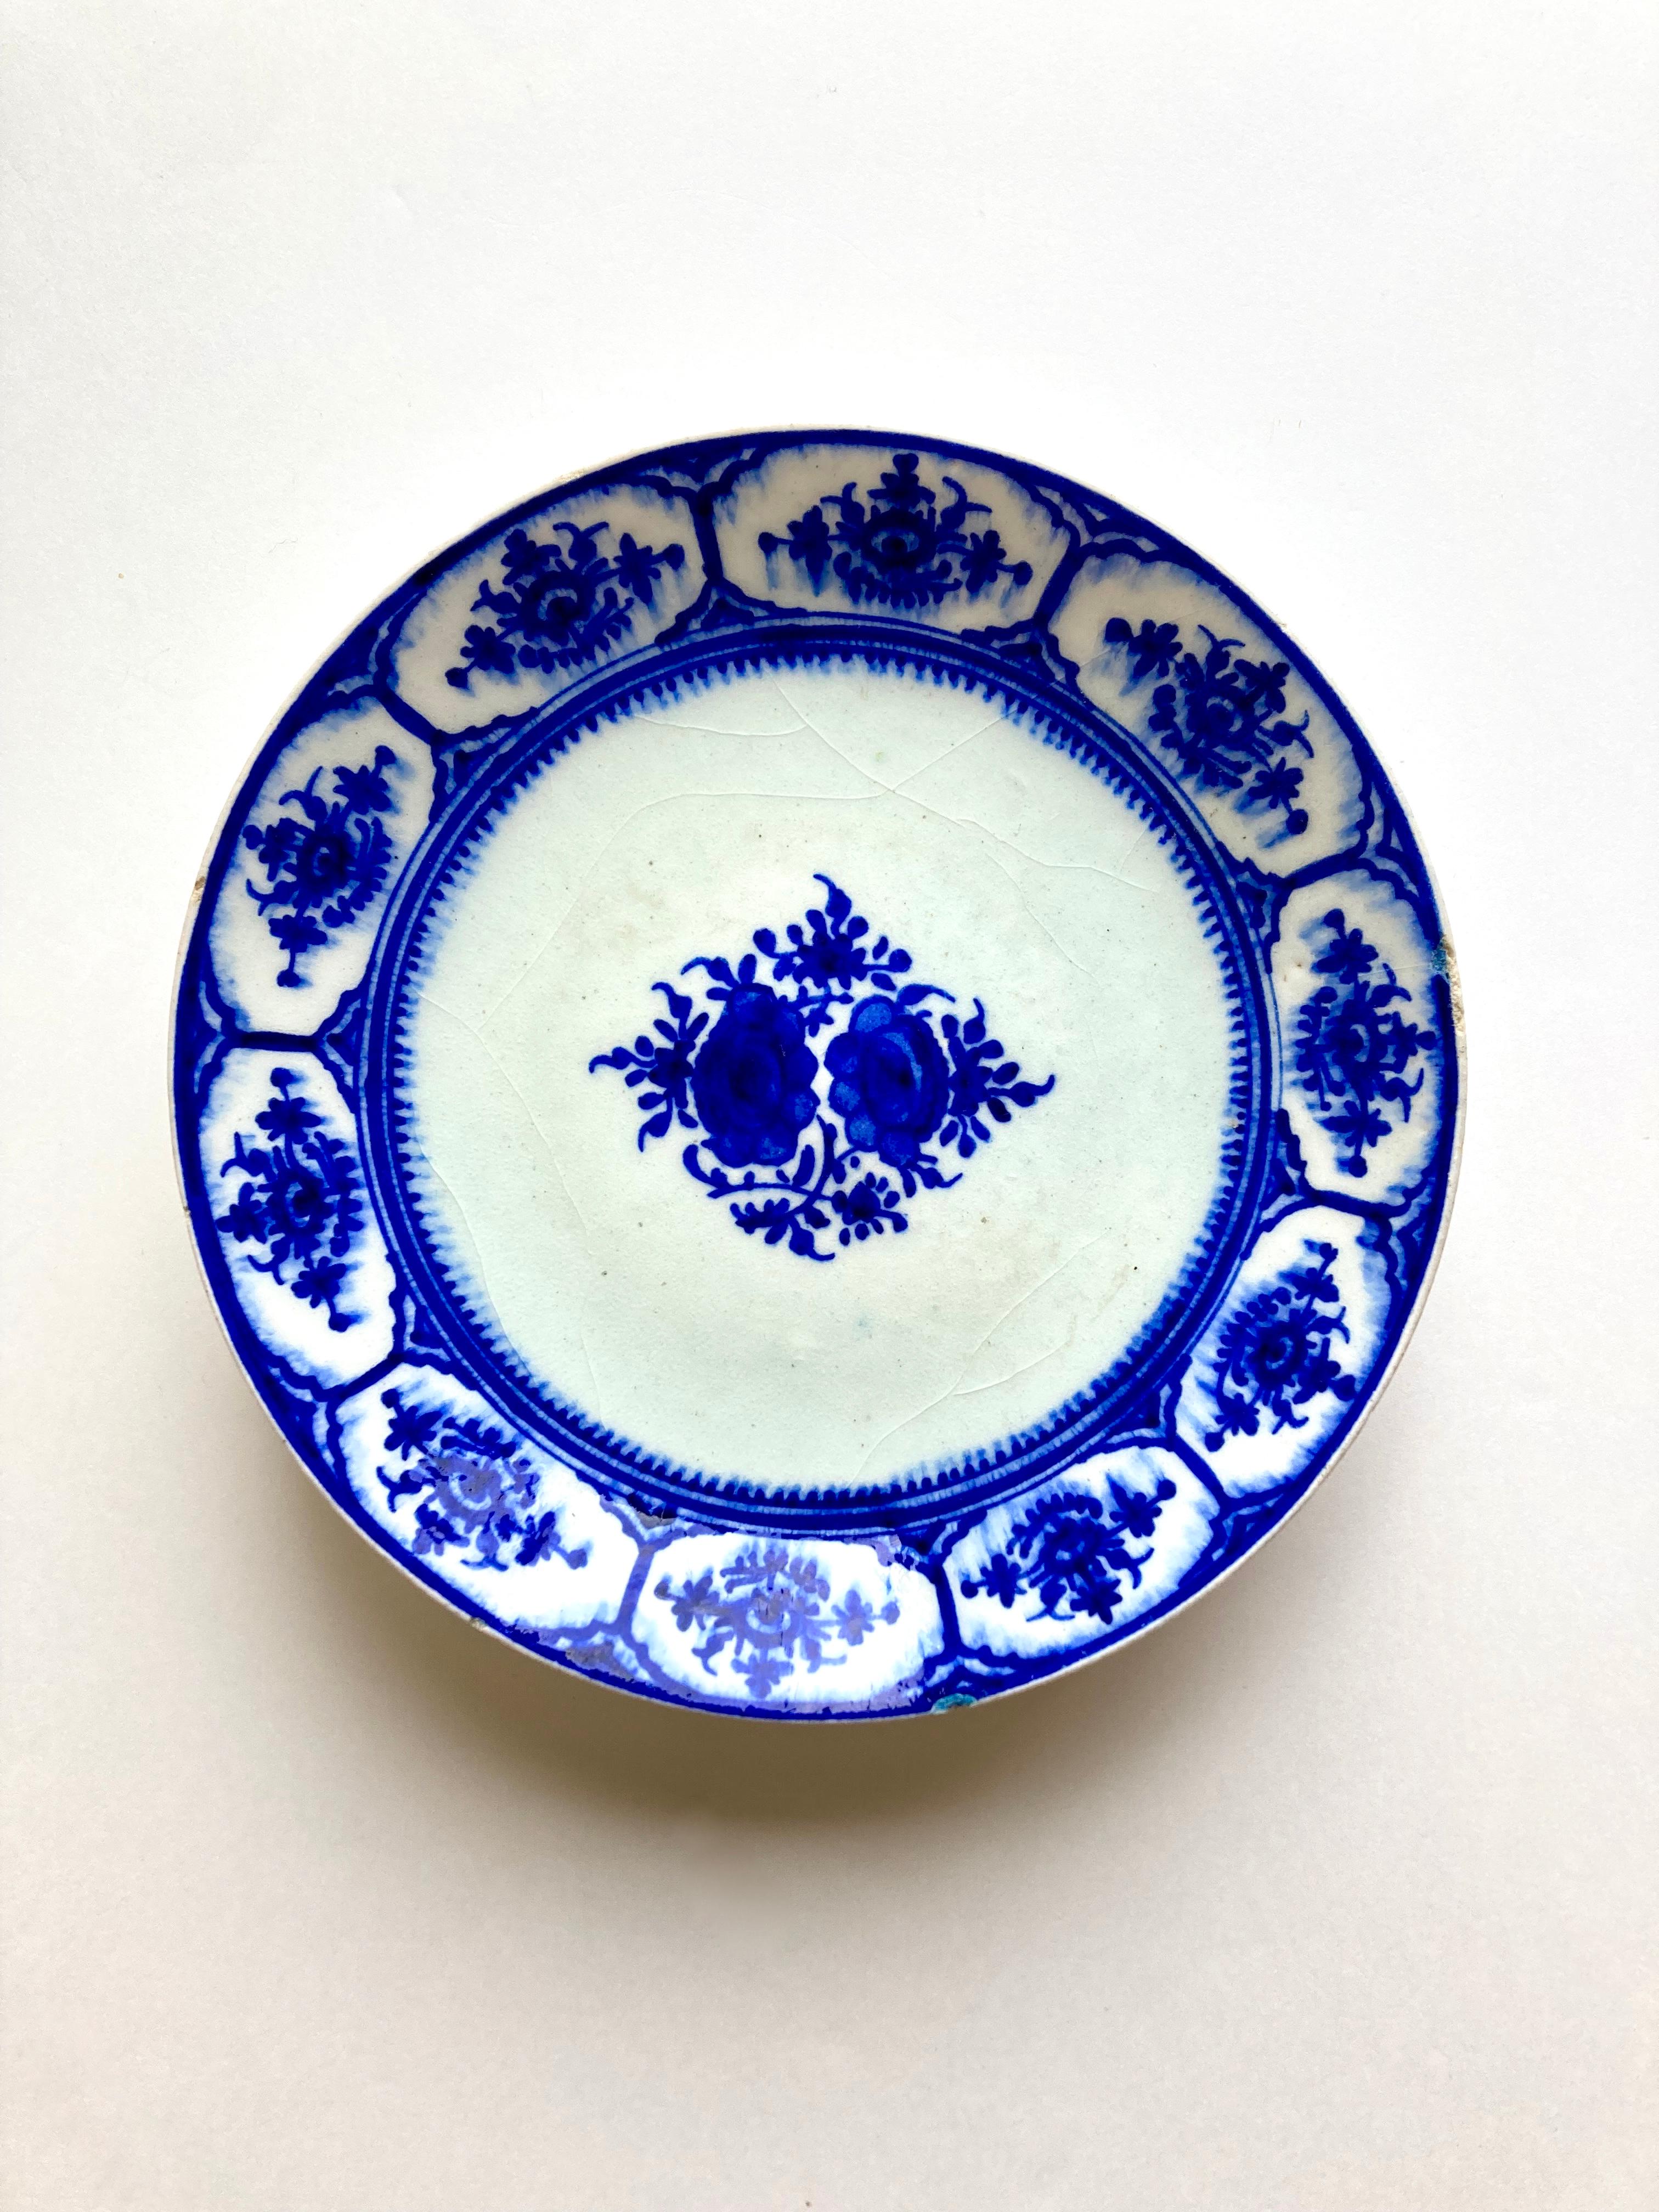 Une mystérieuse assiette ancienne en poterie bleue et blanche. Il s'agit d'une assiette en faïence, peinte à la main d'un motif floral en bleu de cobalt sous glaçure, peut-être une imitation d'une composition chinoise ou même européenne/de Delft.